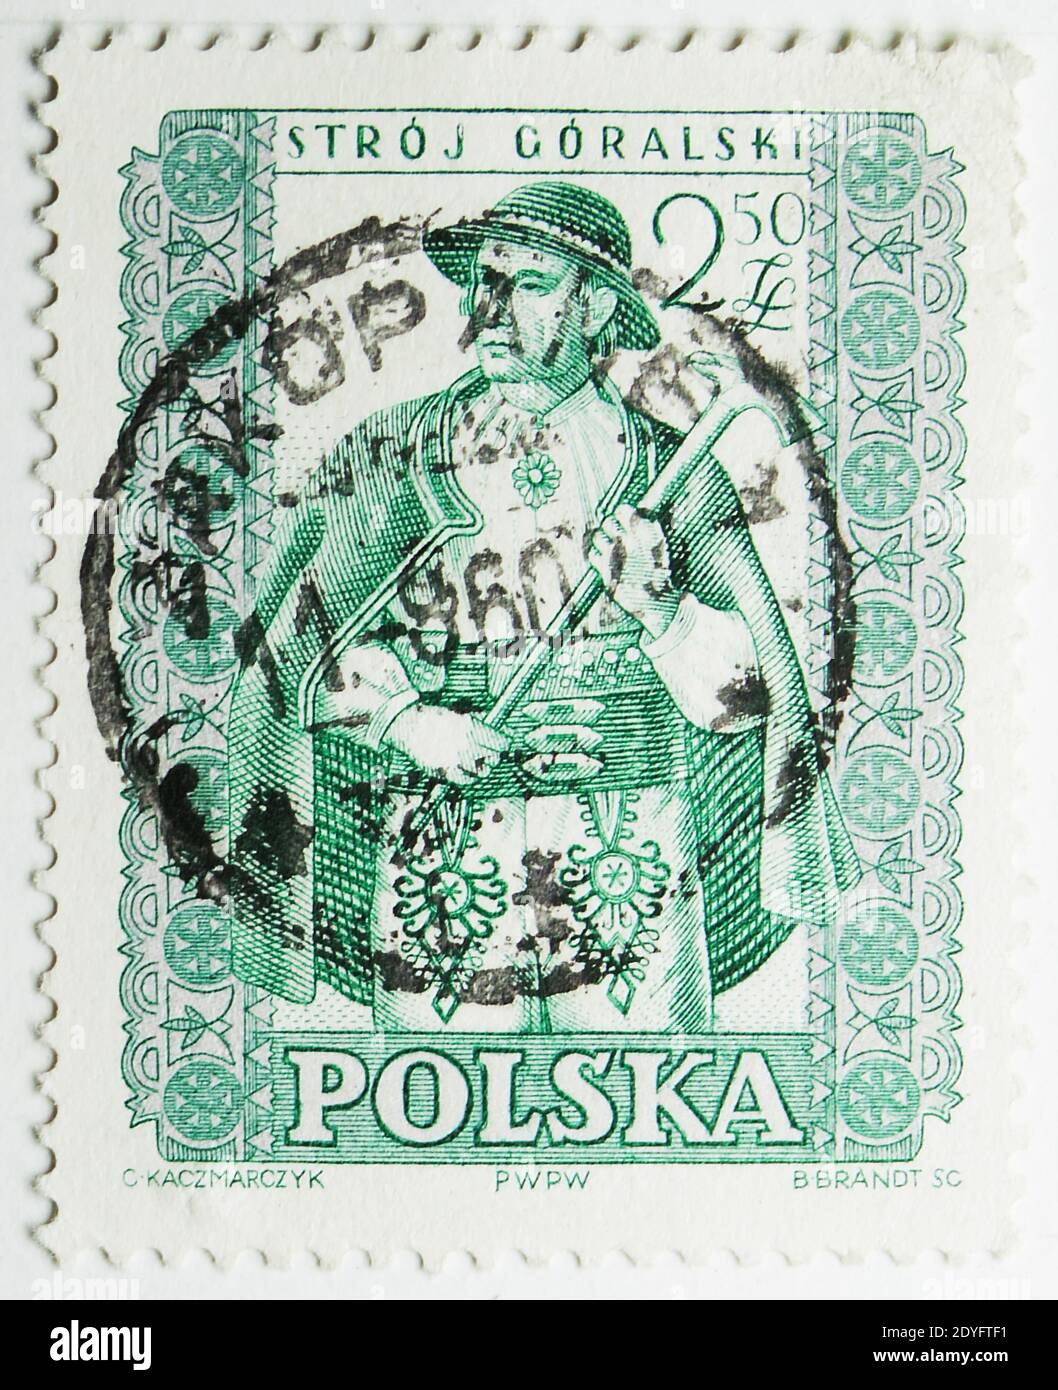 MOSCOU, RUSSIE - 15 JUILLET 2019 : timbre-poste imprimé en Pologne montre Gorale, série de costumes traditionnels, vers 1959 Banque D'Images